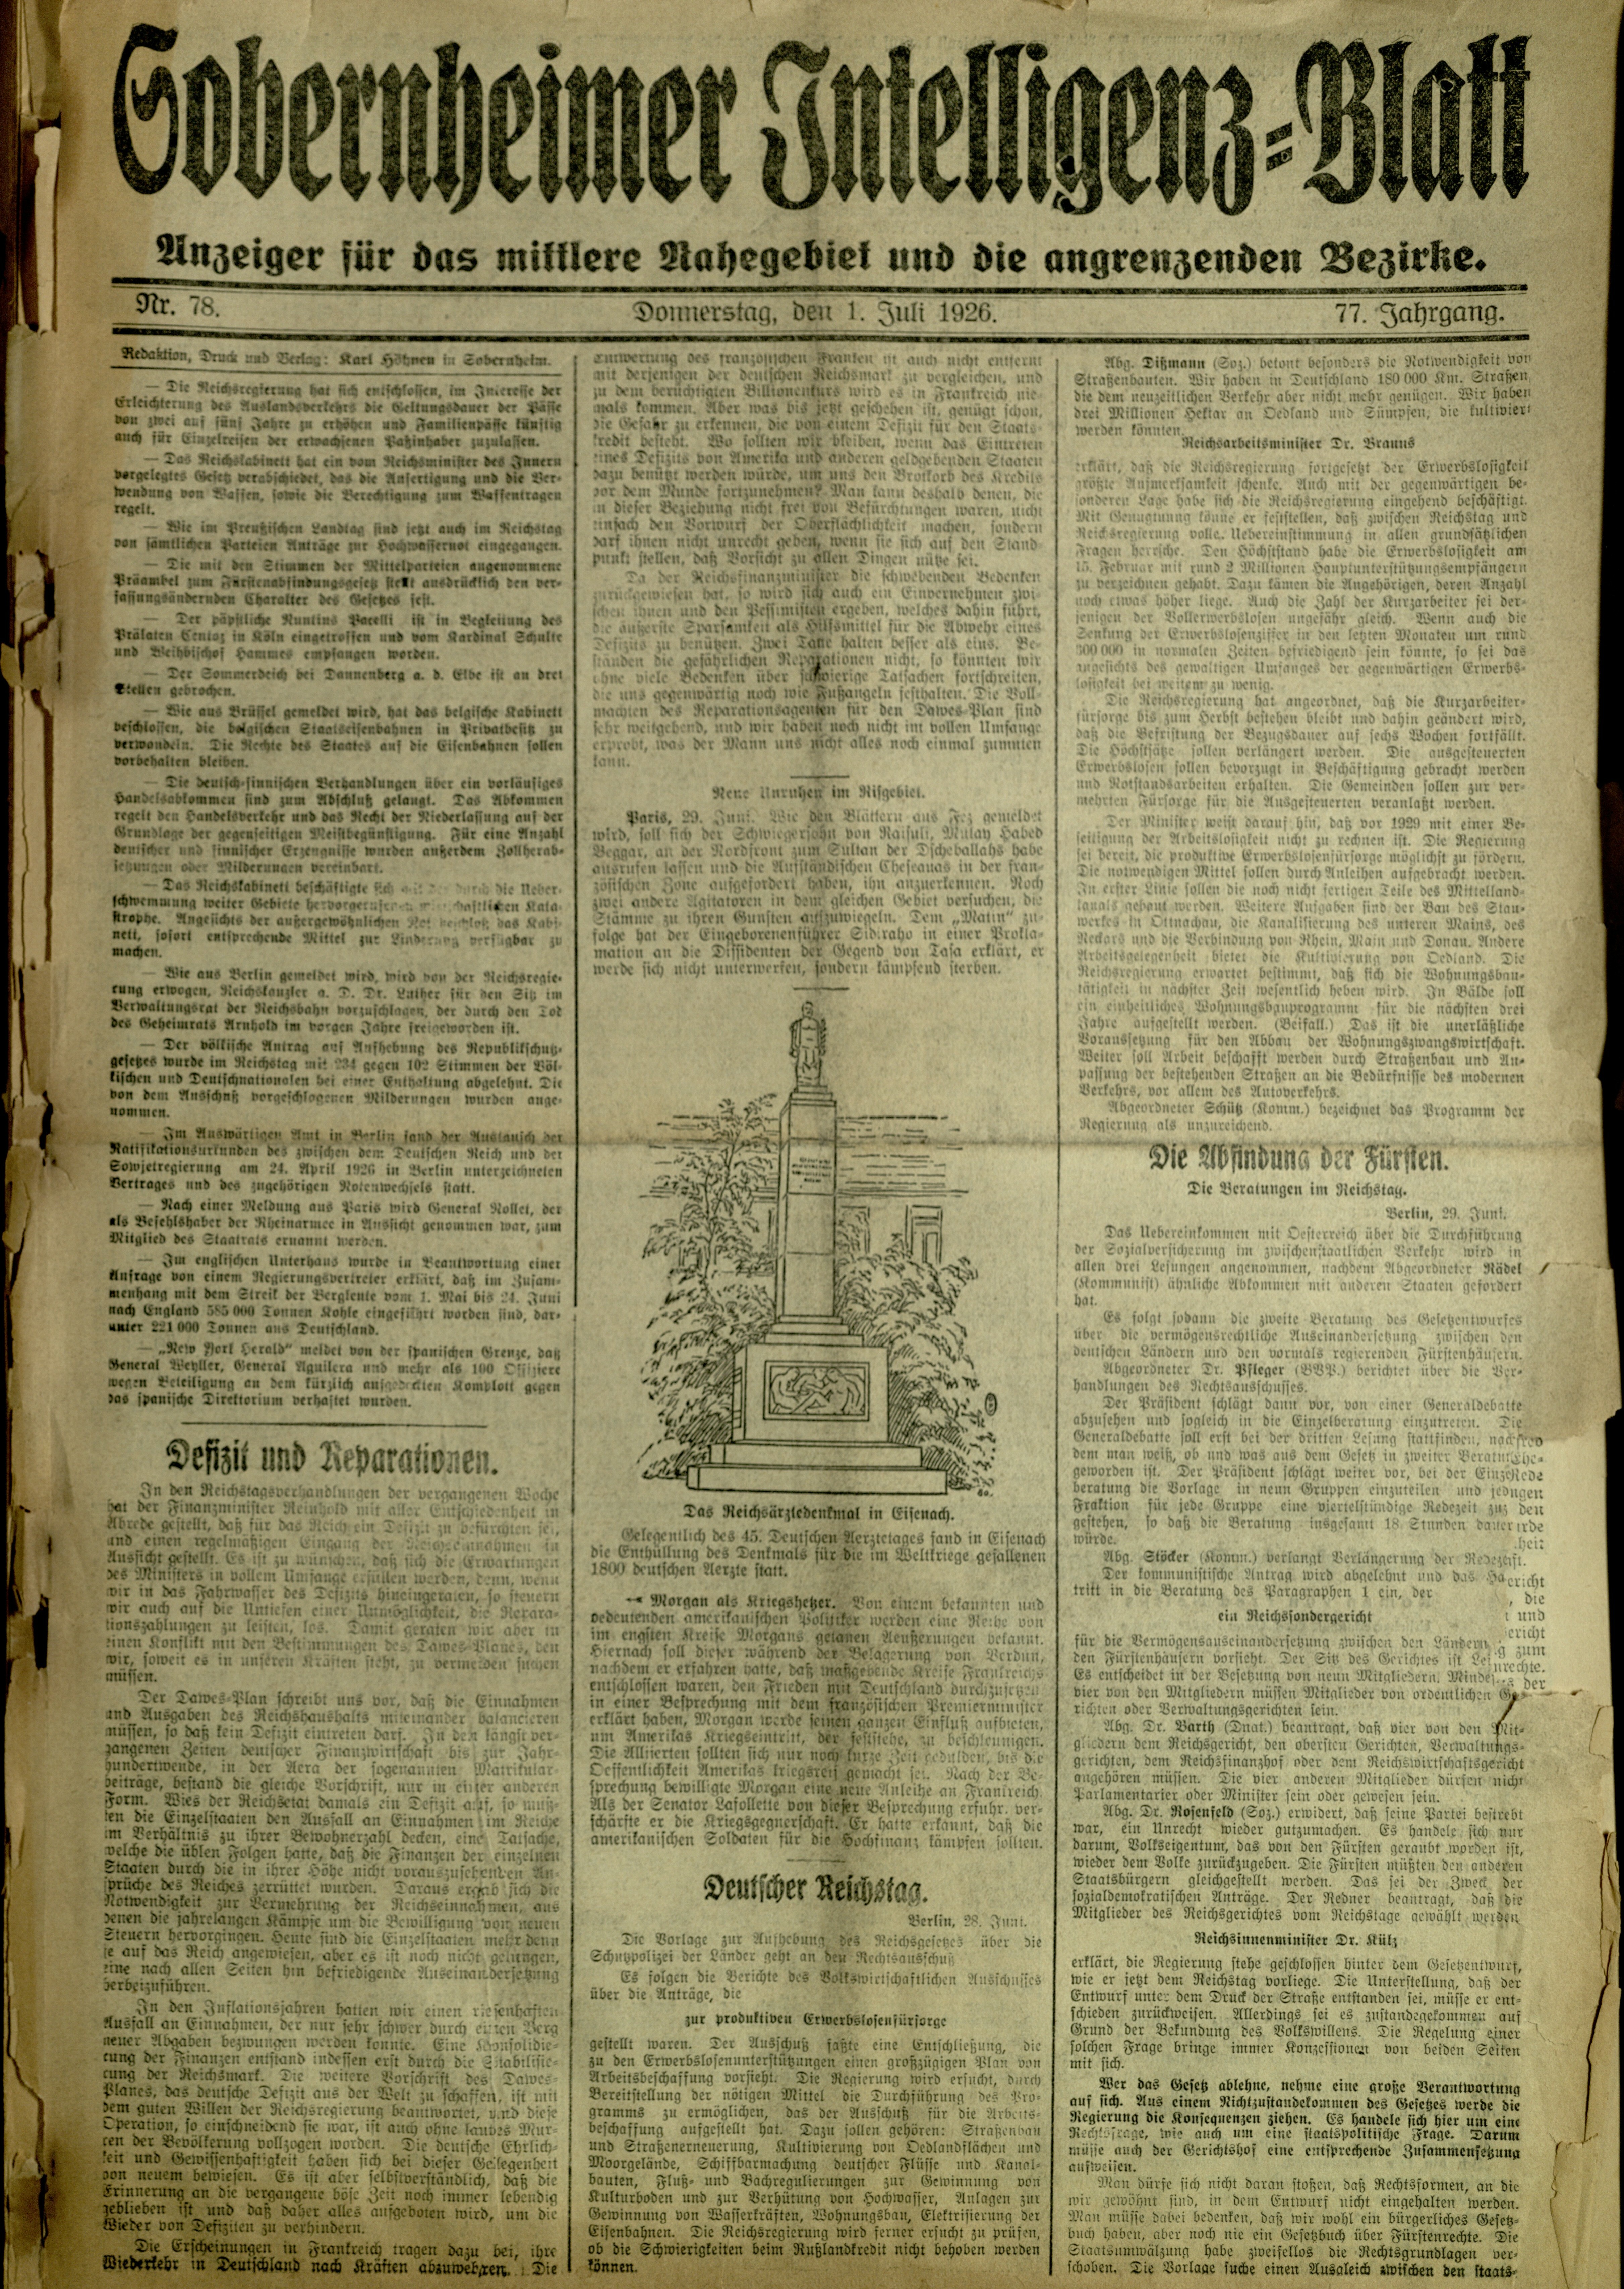 Zeitung: Sobernheimer Intelligenzblatt; Juli 1926, Jg. 73 Nr. 78 (Heimatmuseum Bad Sobernheim CC BY-NC-SA)